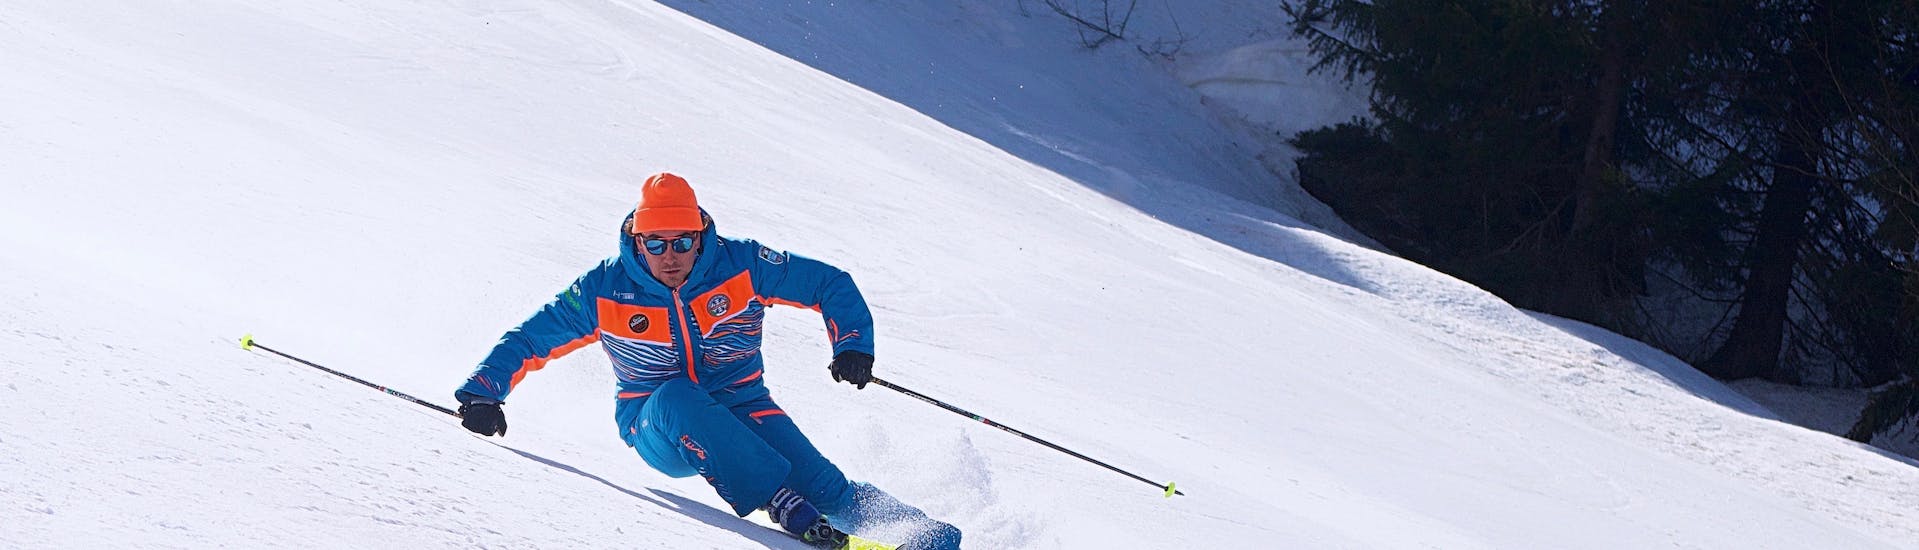 Clases de esquí para adultos a partir de 16 años para avanzados.